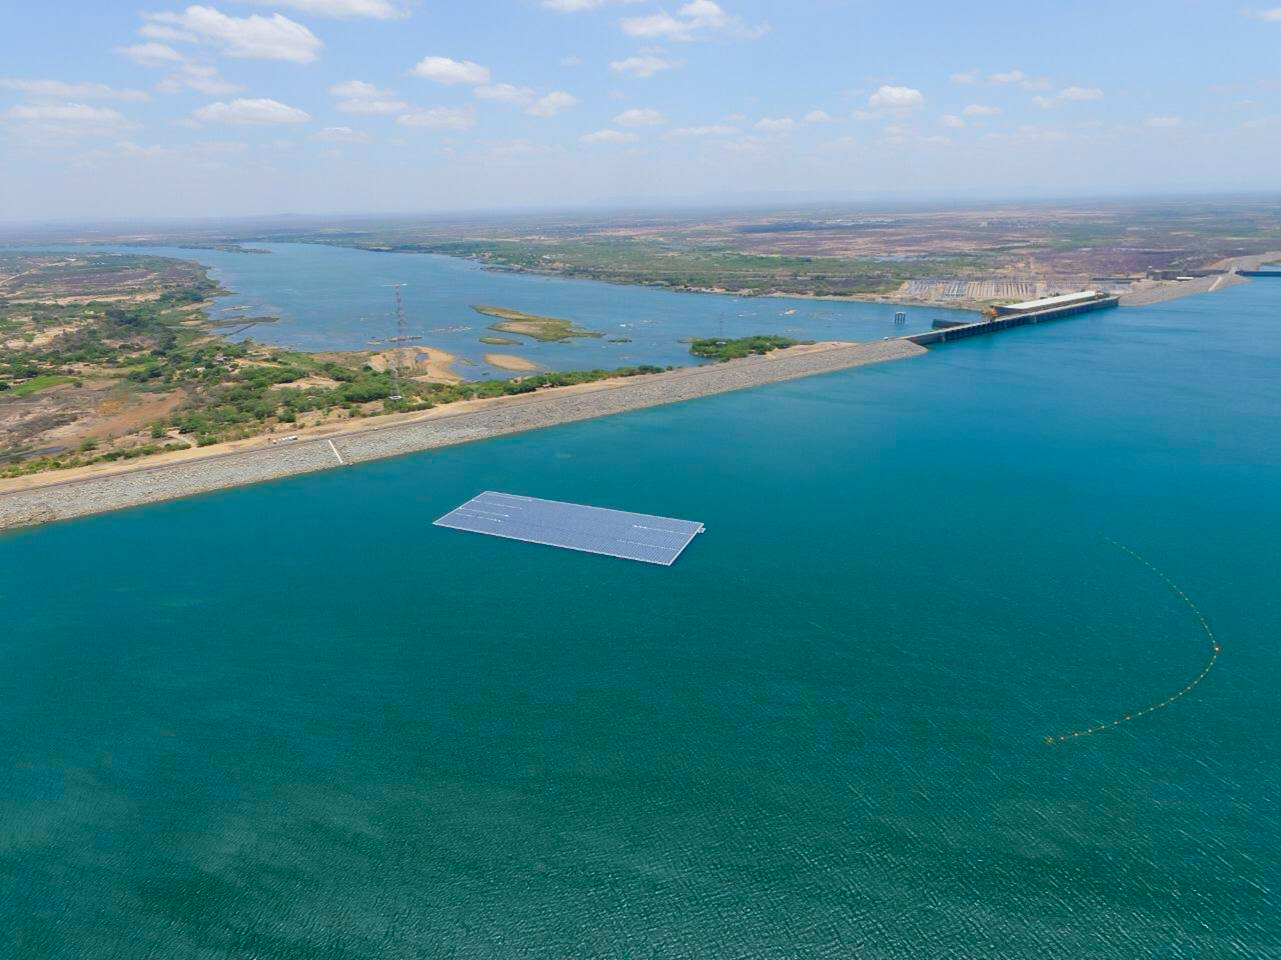 Sobradinho floating PV plant in Brasil